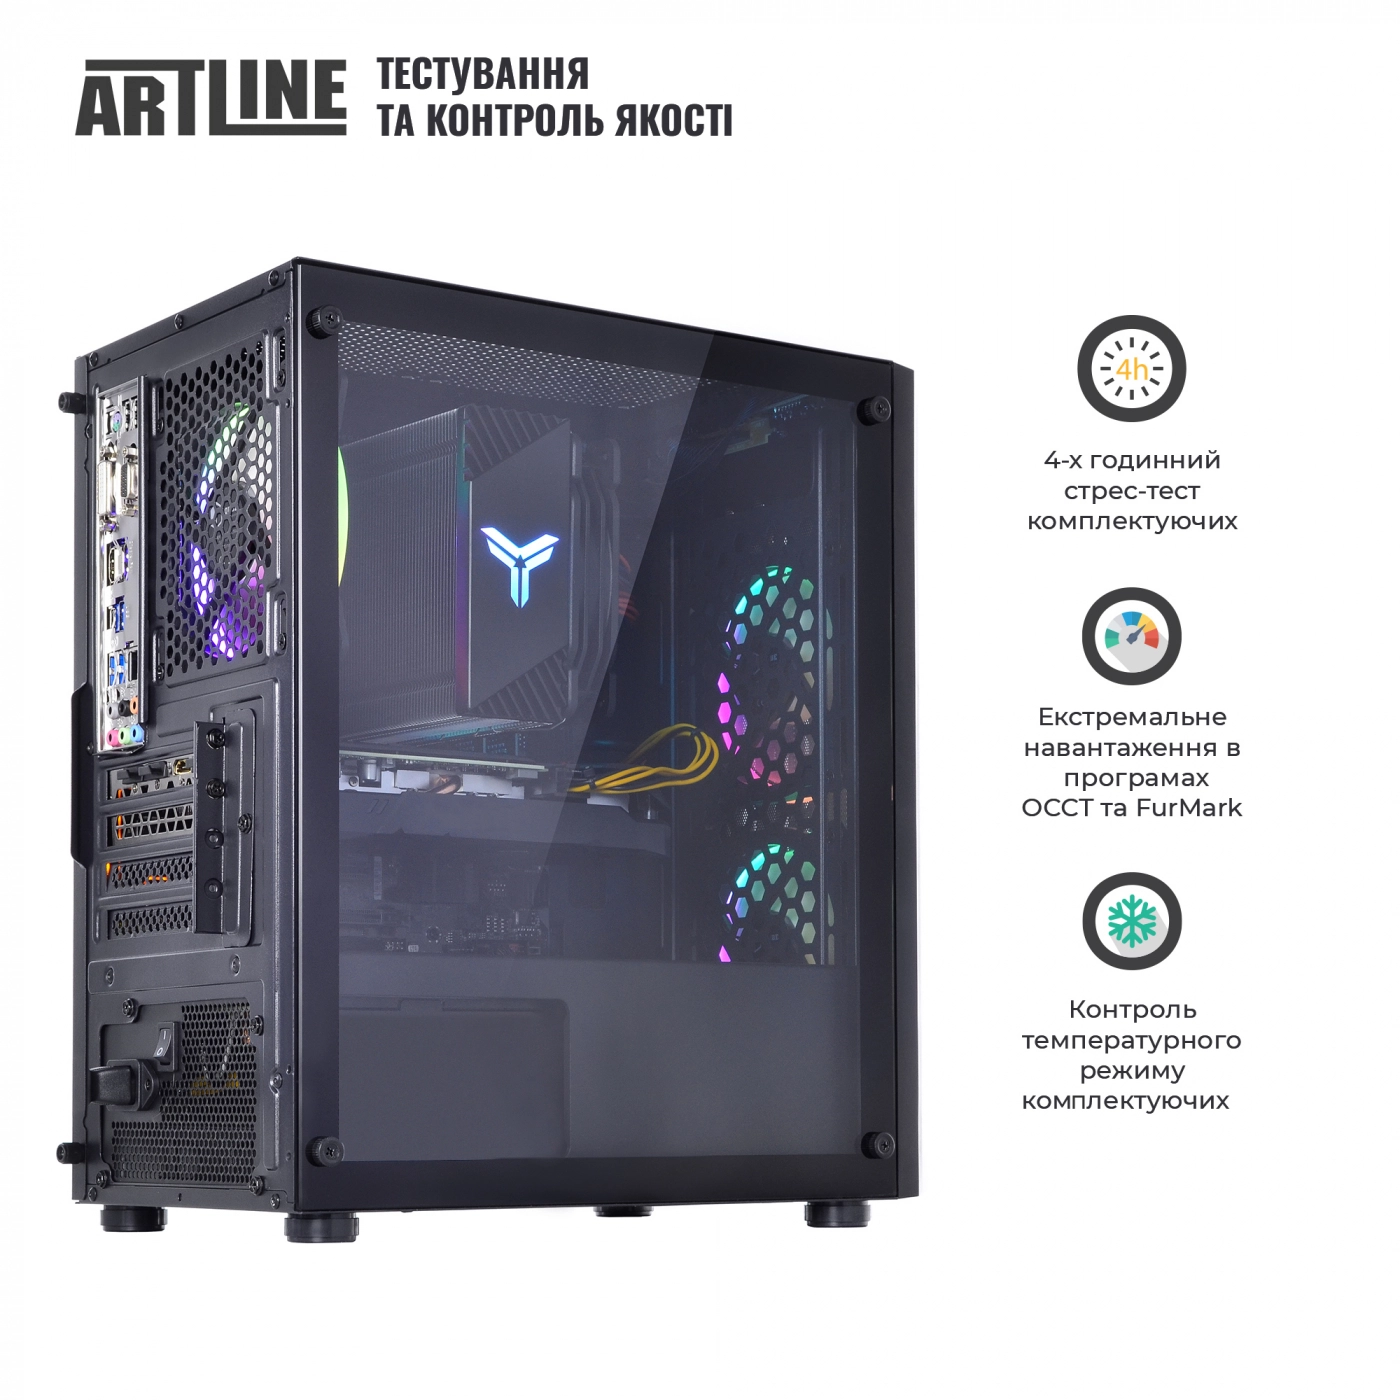 Купить Компьютер ARTLINE Gaming X71v41 - фото 9